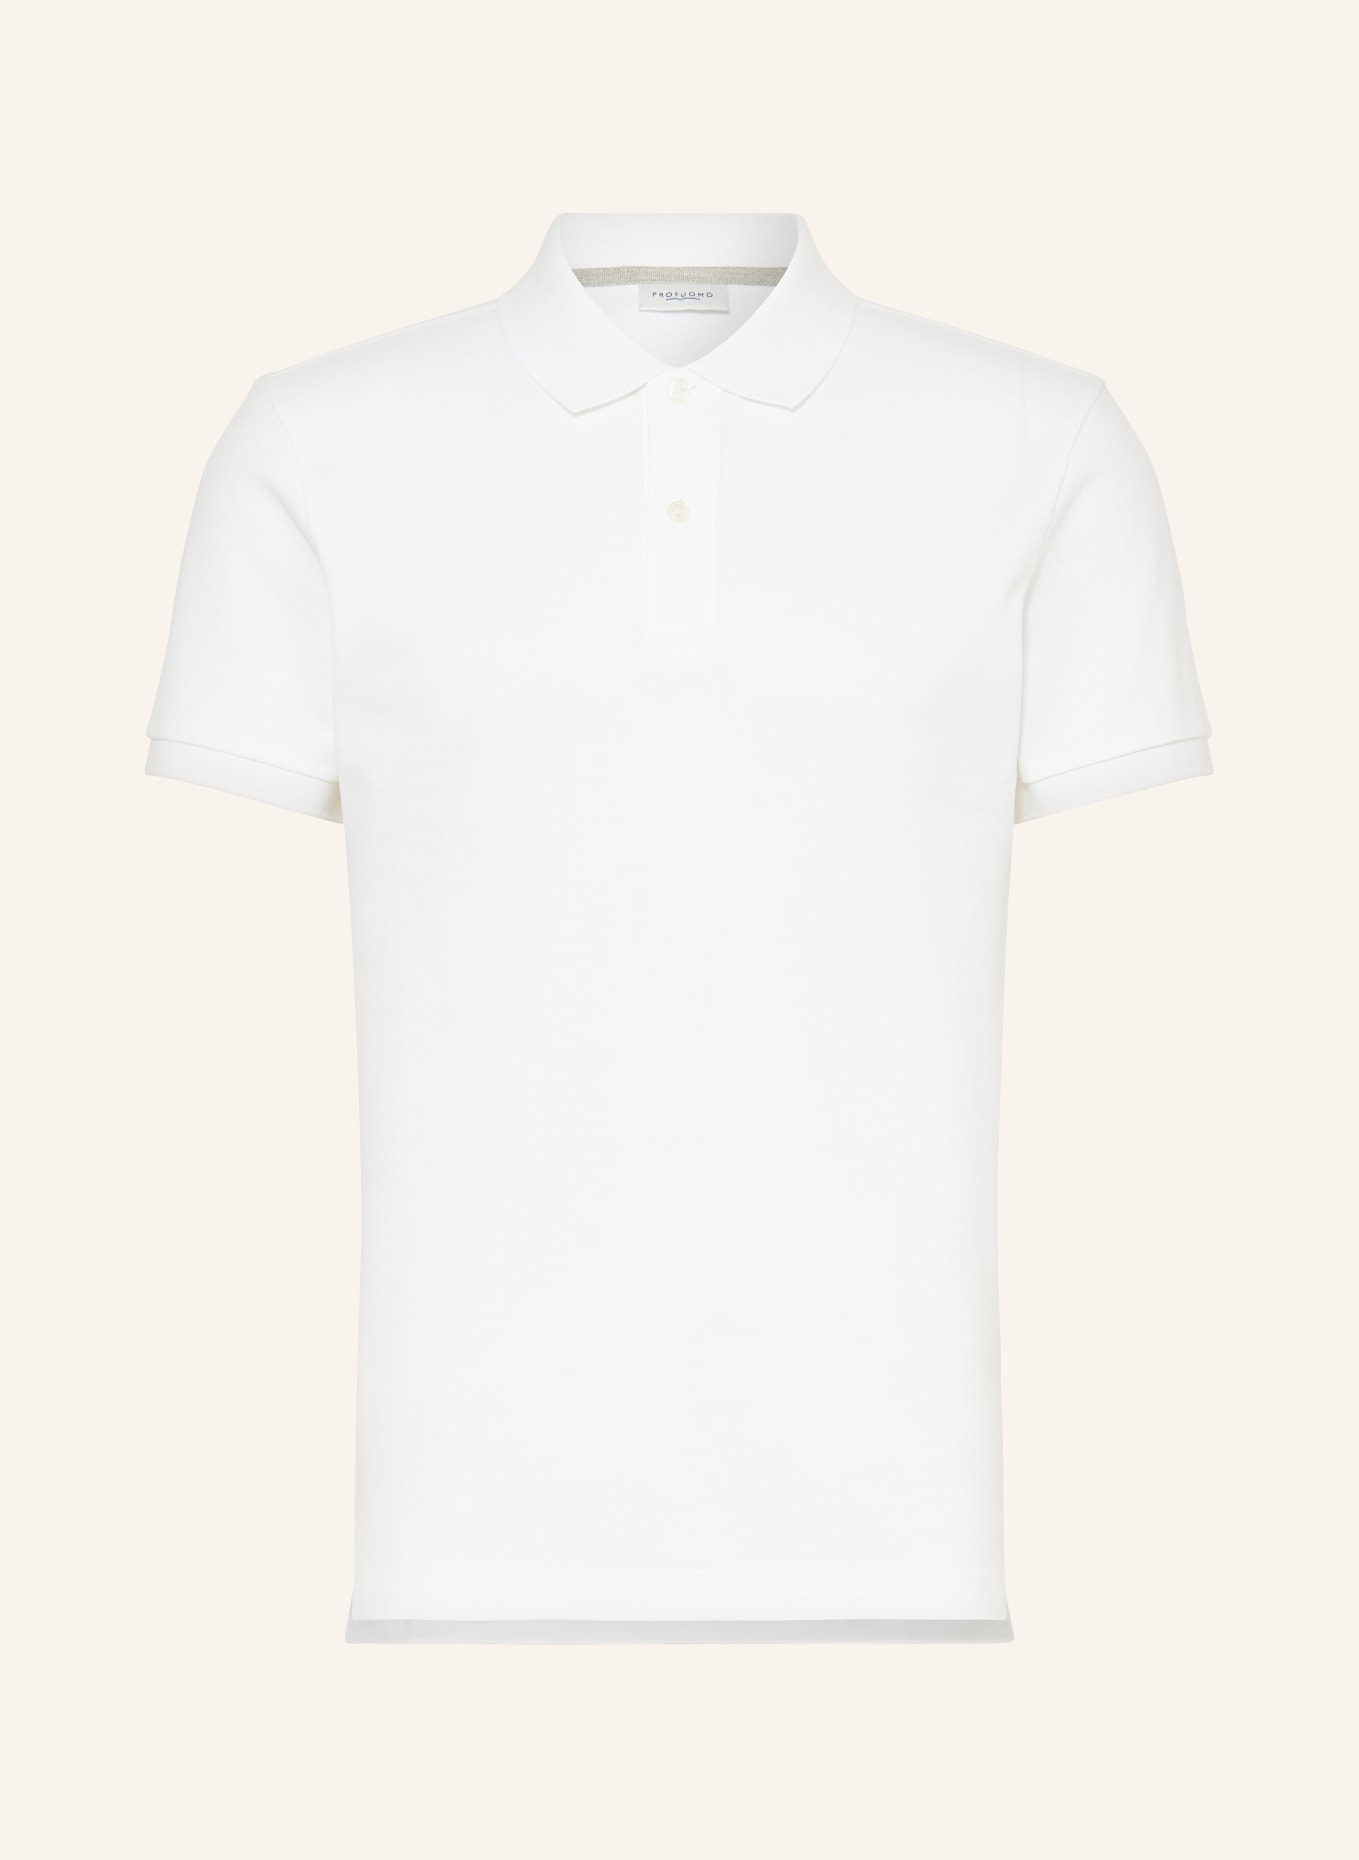 PROFUOMO Piqué polo shirt, Color: WHITE (Image 1)